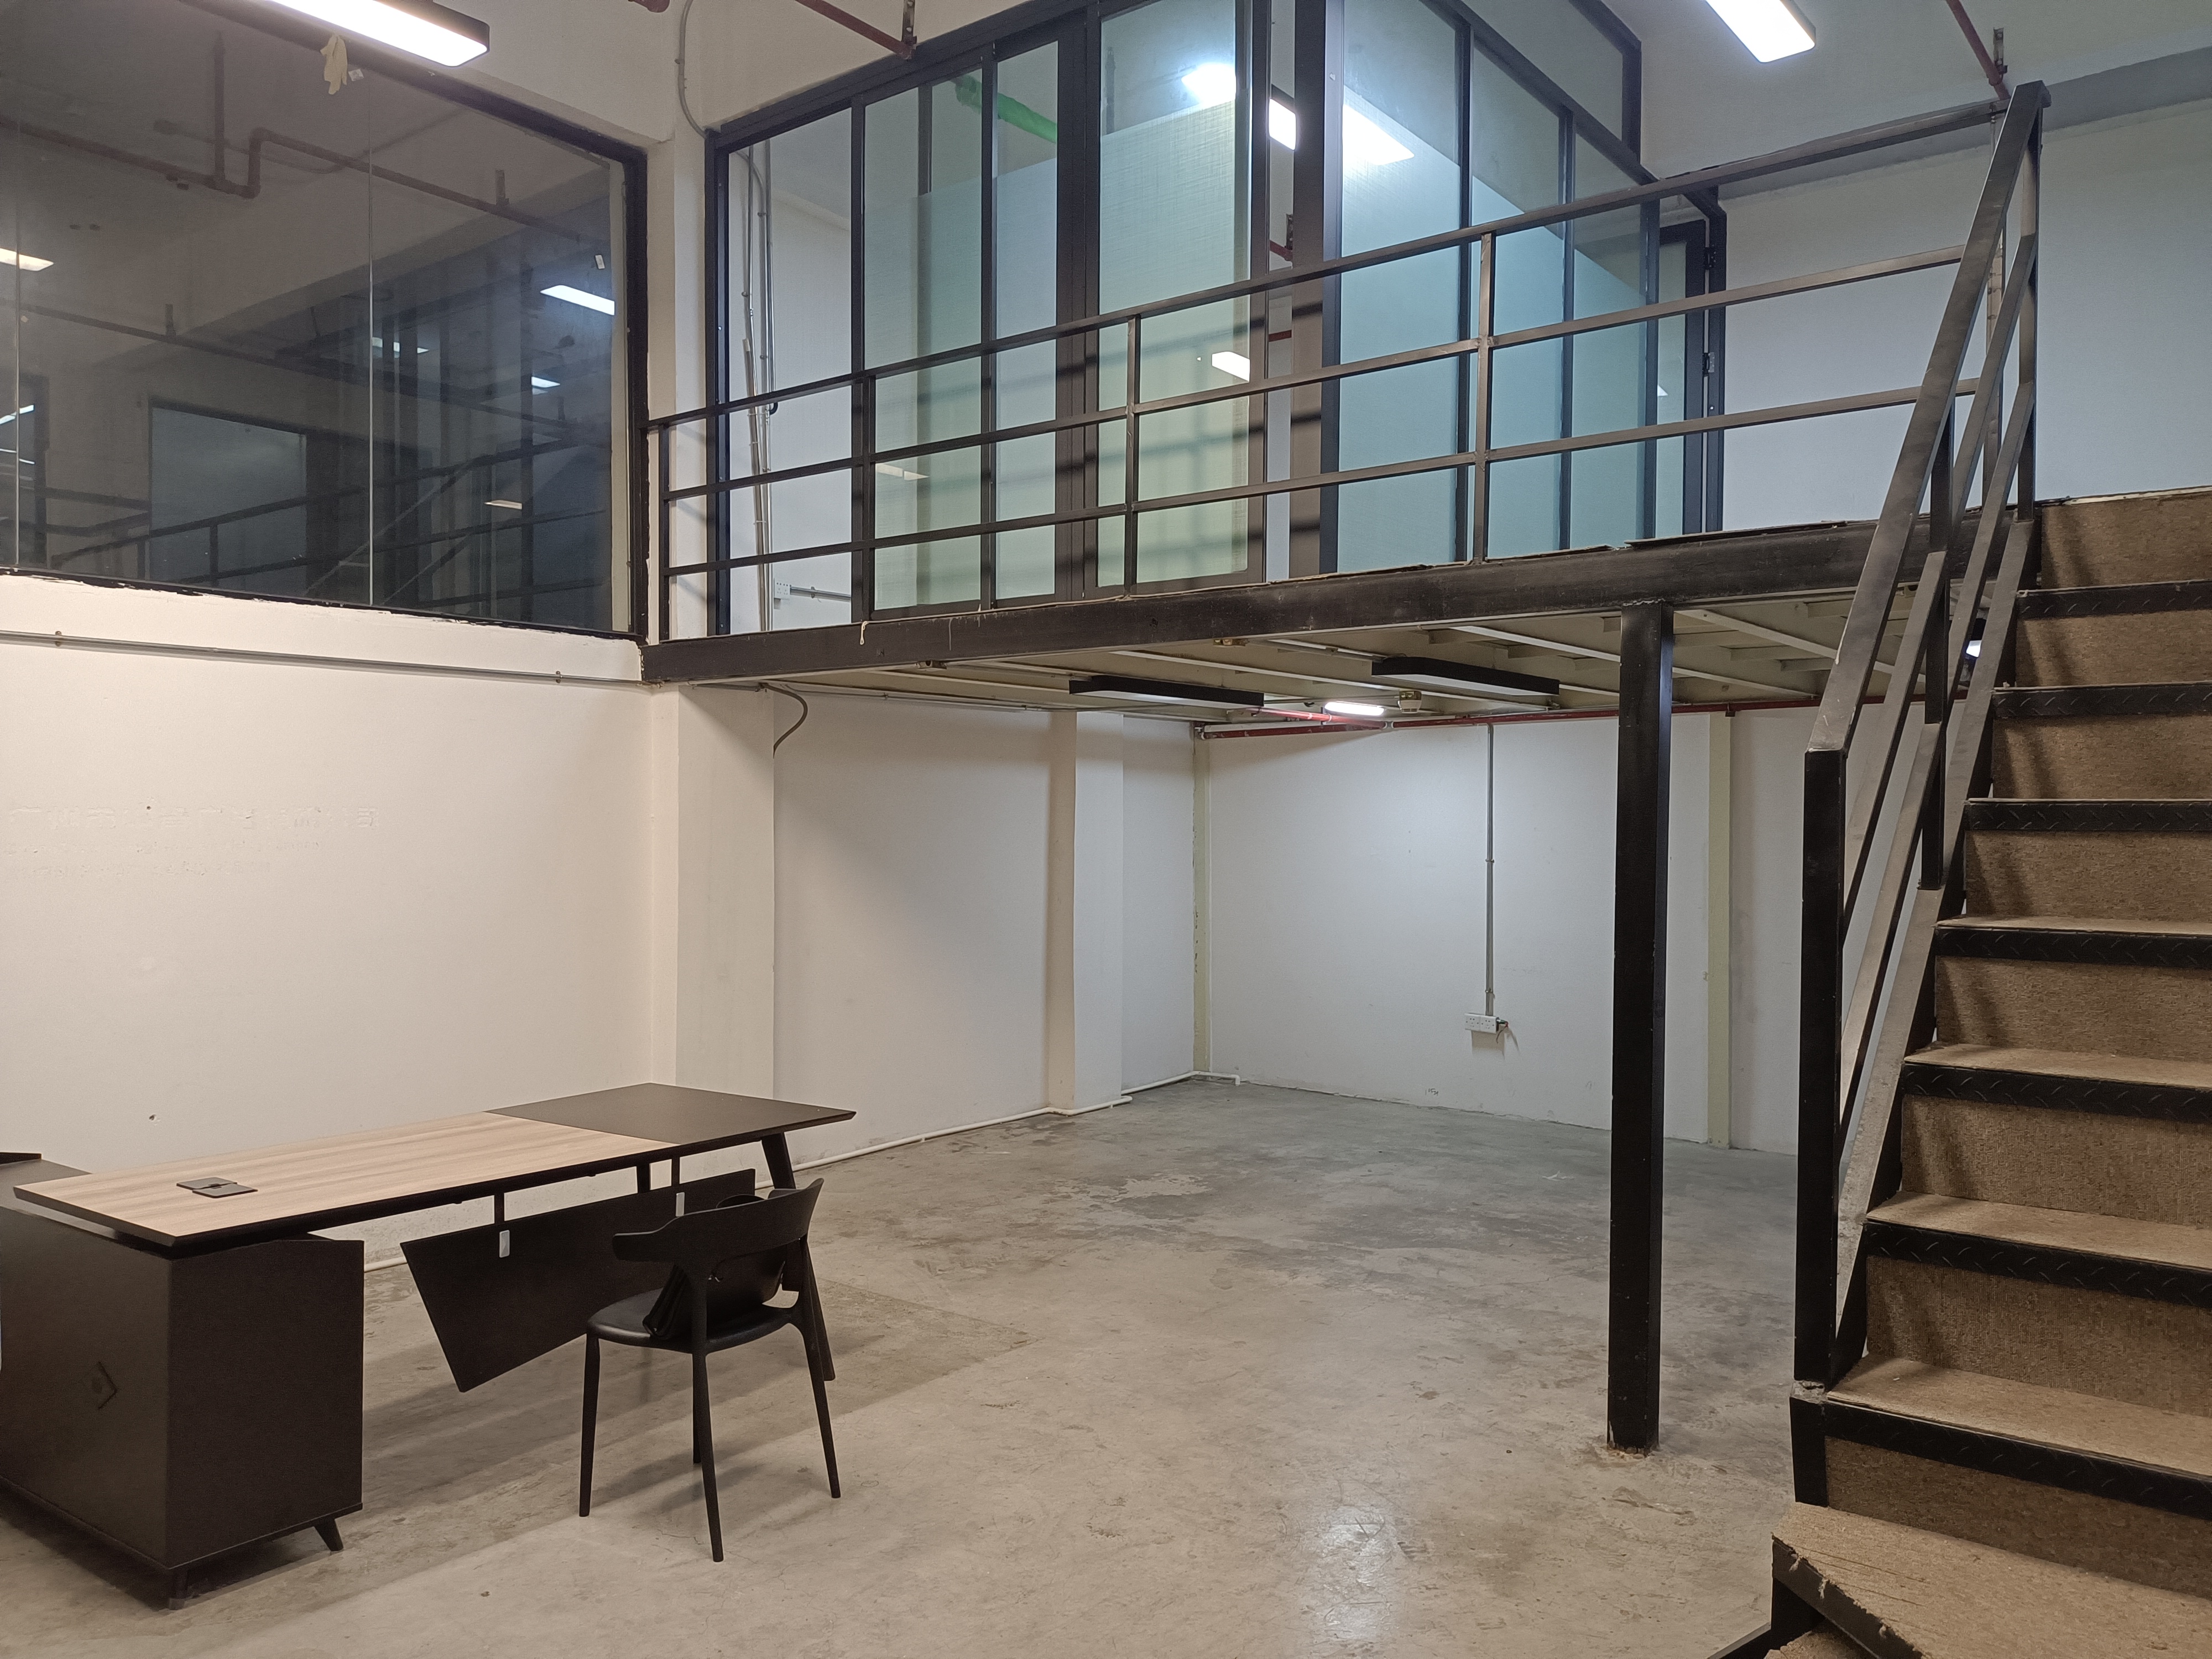 海珠区客村地铁站附近108平方精装修特价办公室